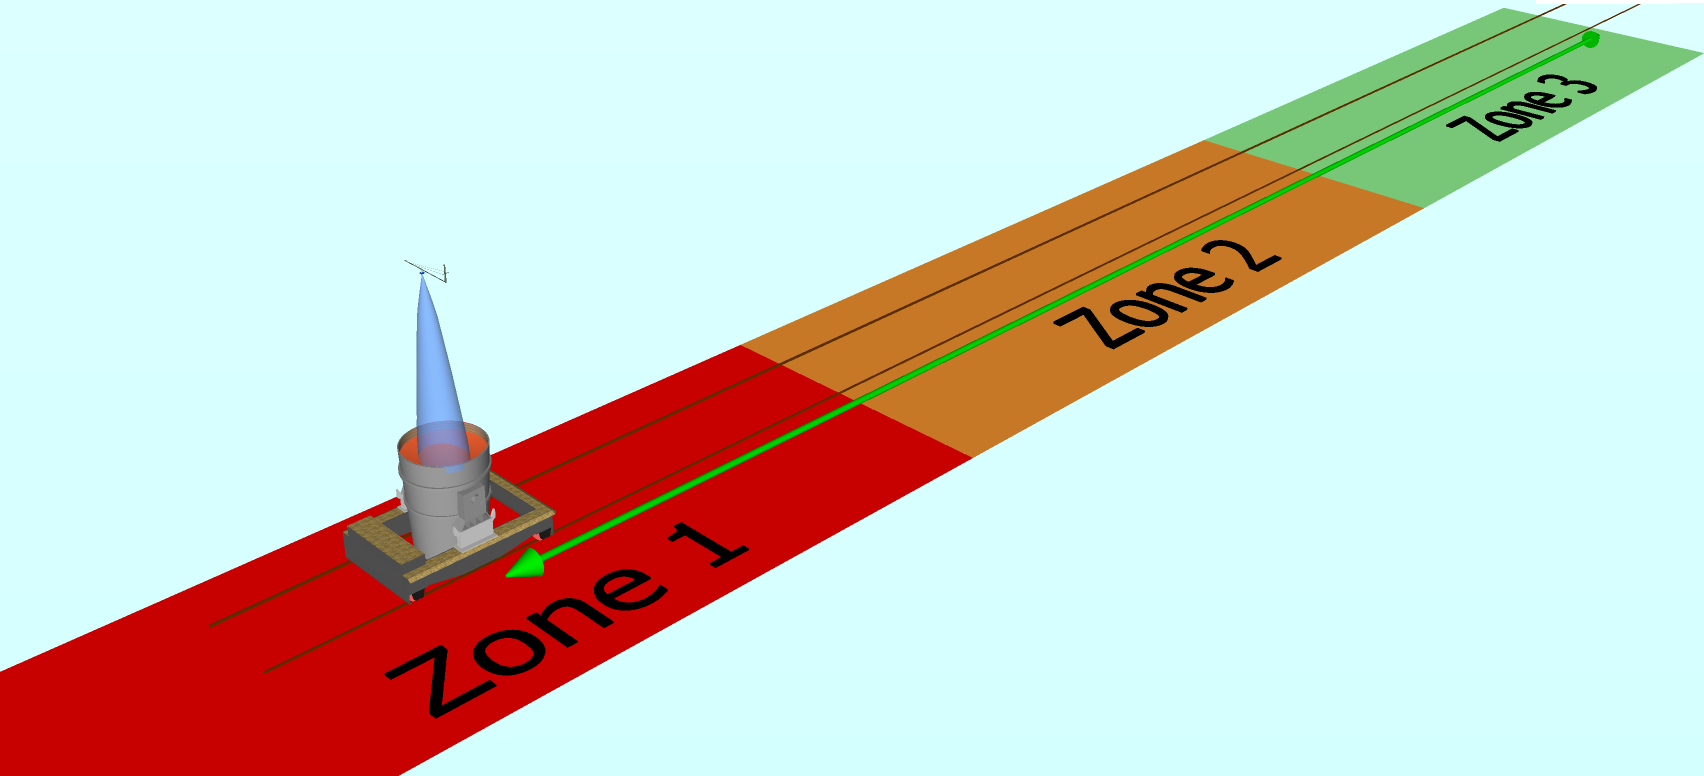 Трансферная тележка с определением расстояния проезда (нажмите на изображение, чтобы увеличить его)